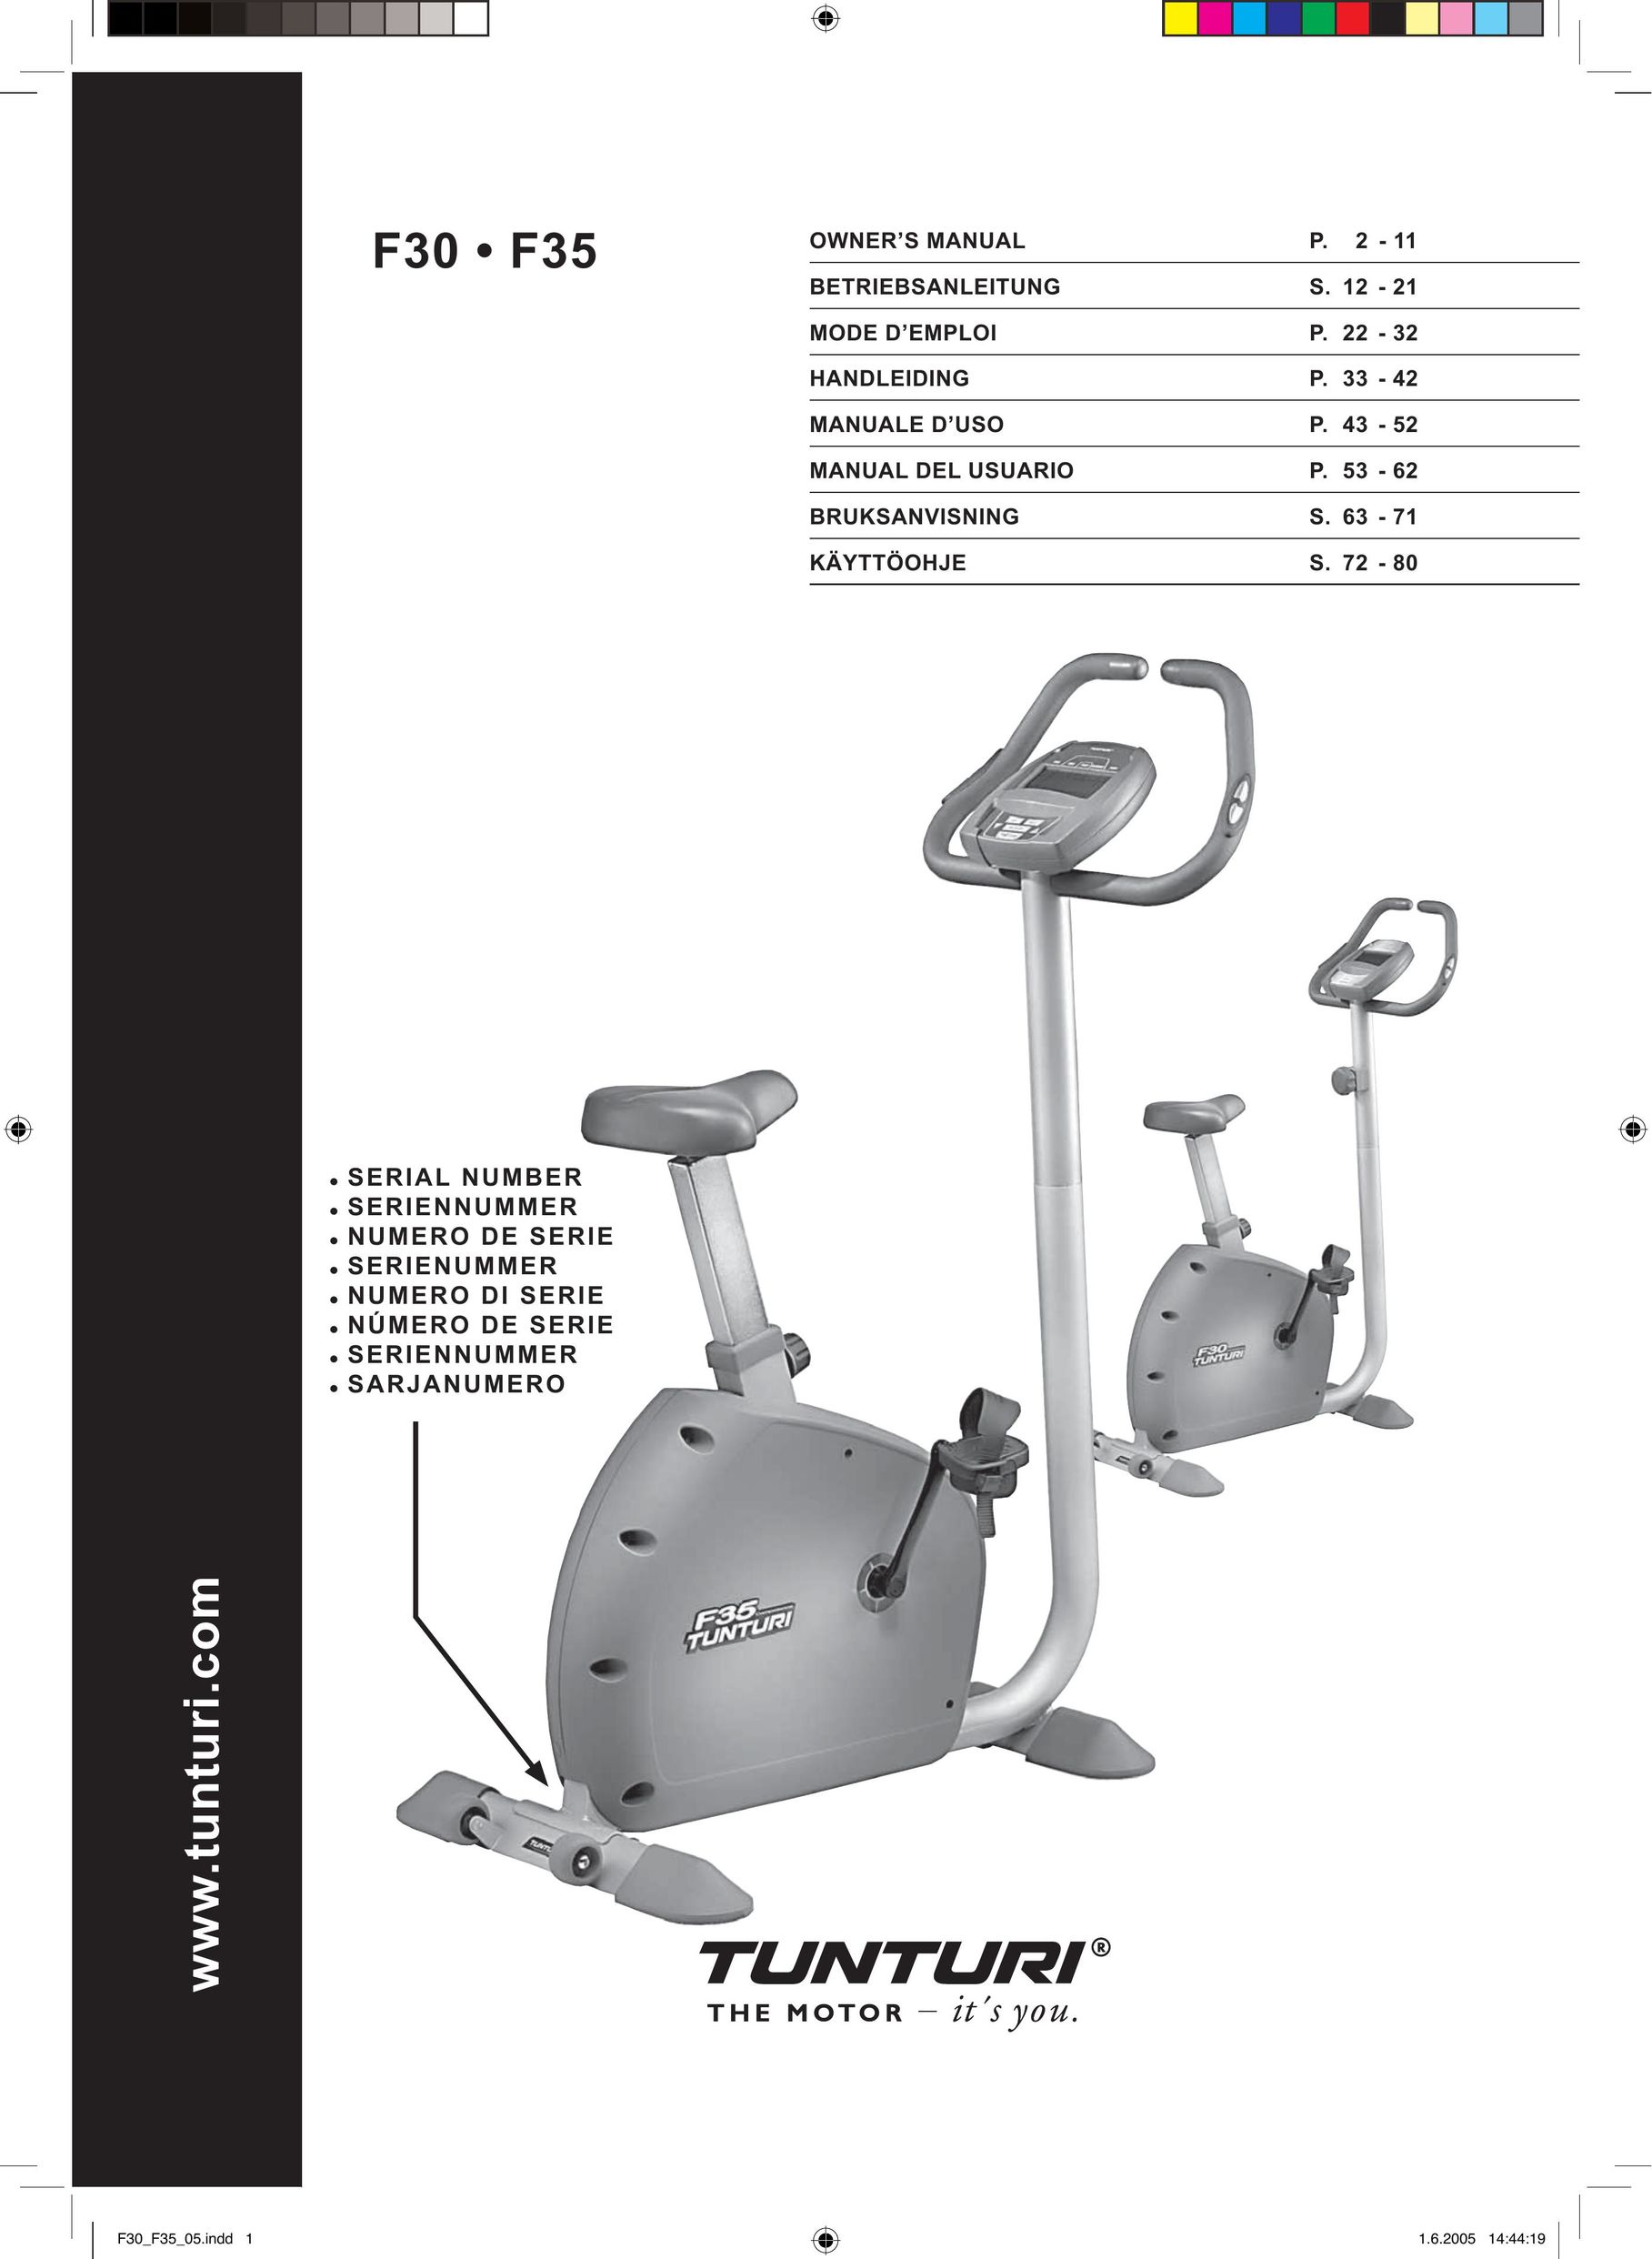 Tunturi F35 Home Gym User Manual